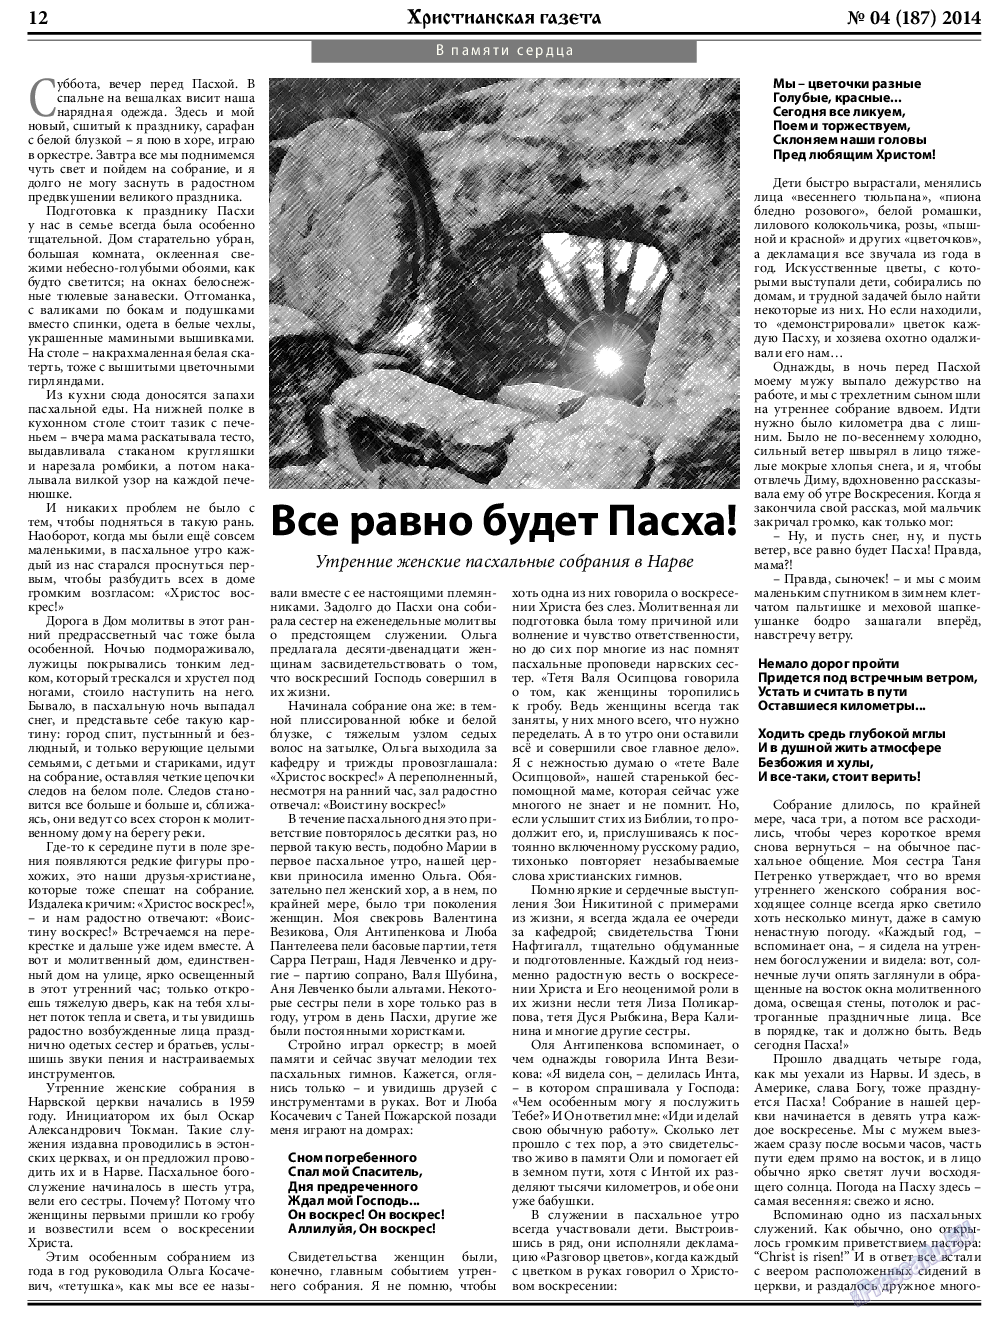 Христианская газета, газета. 2014 №4 стр.12